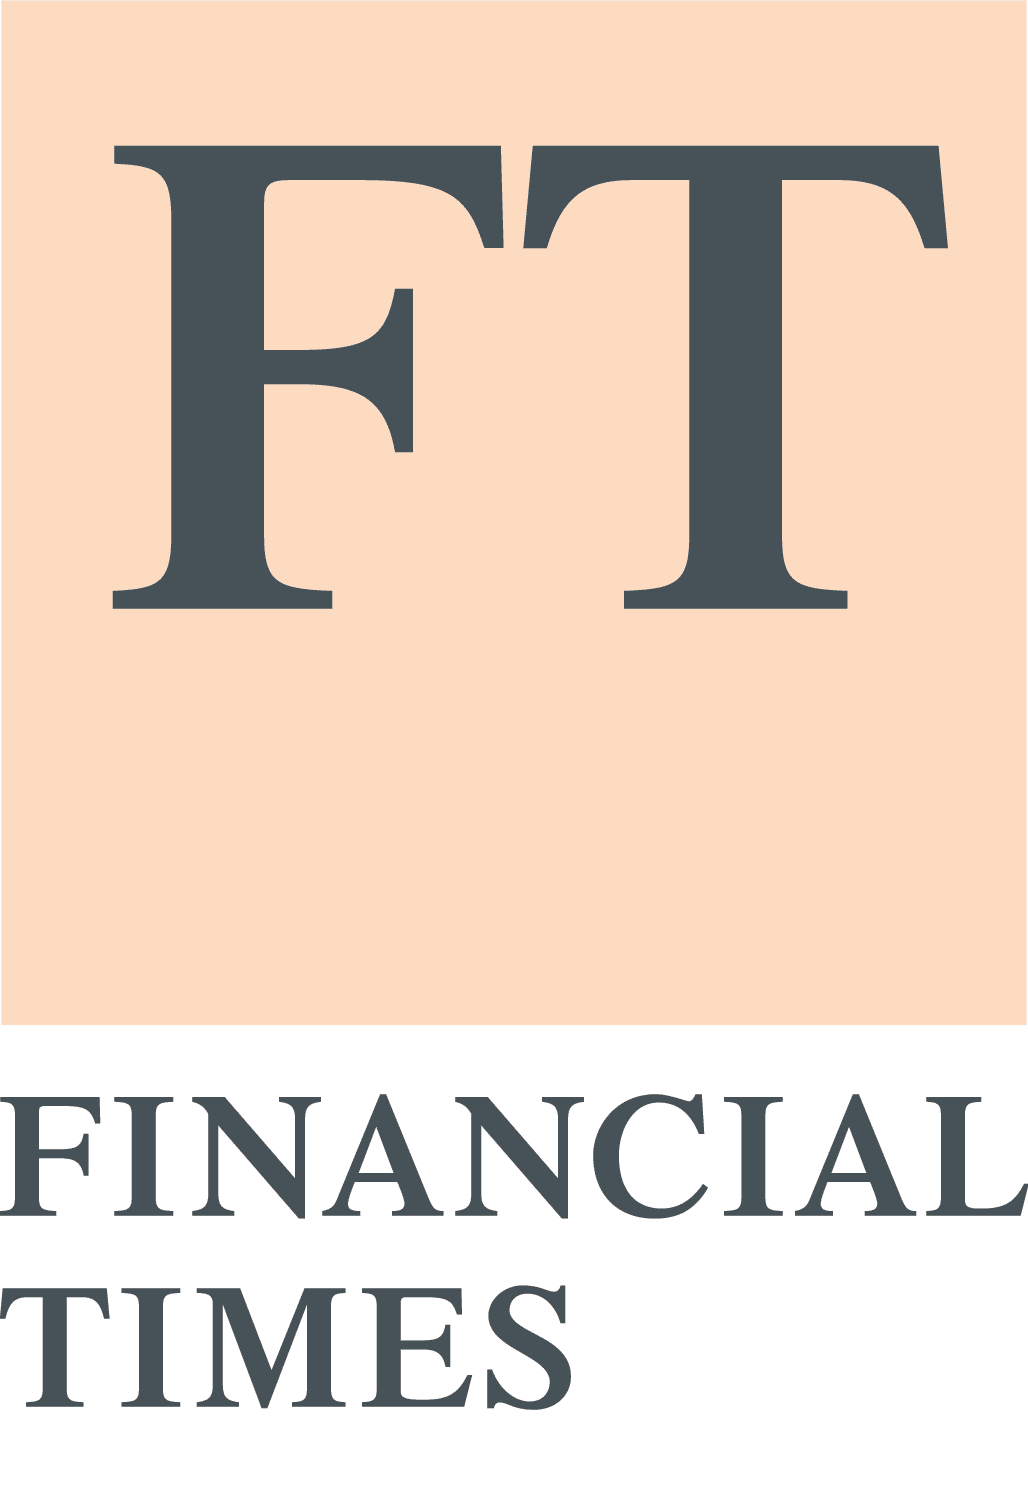 Fincancial Times Logo